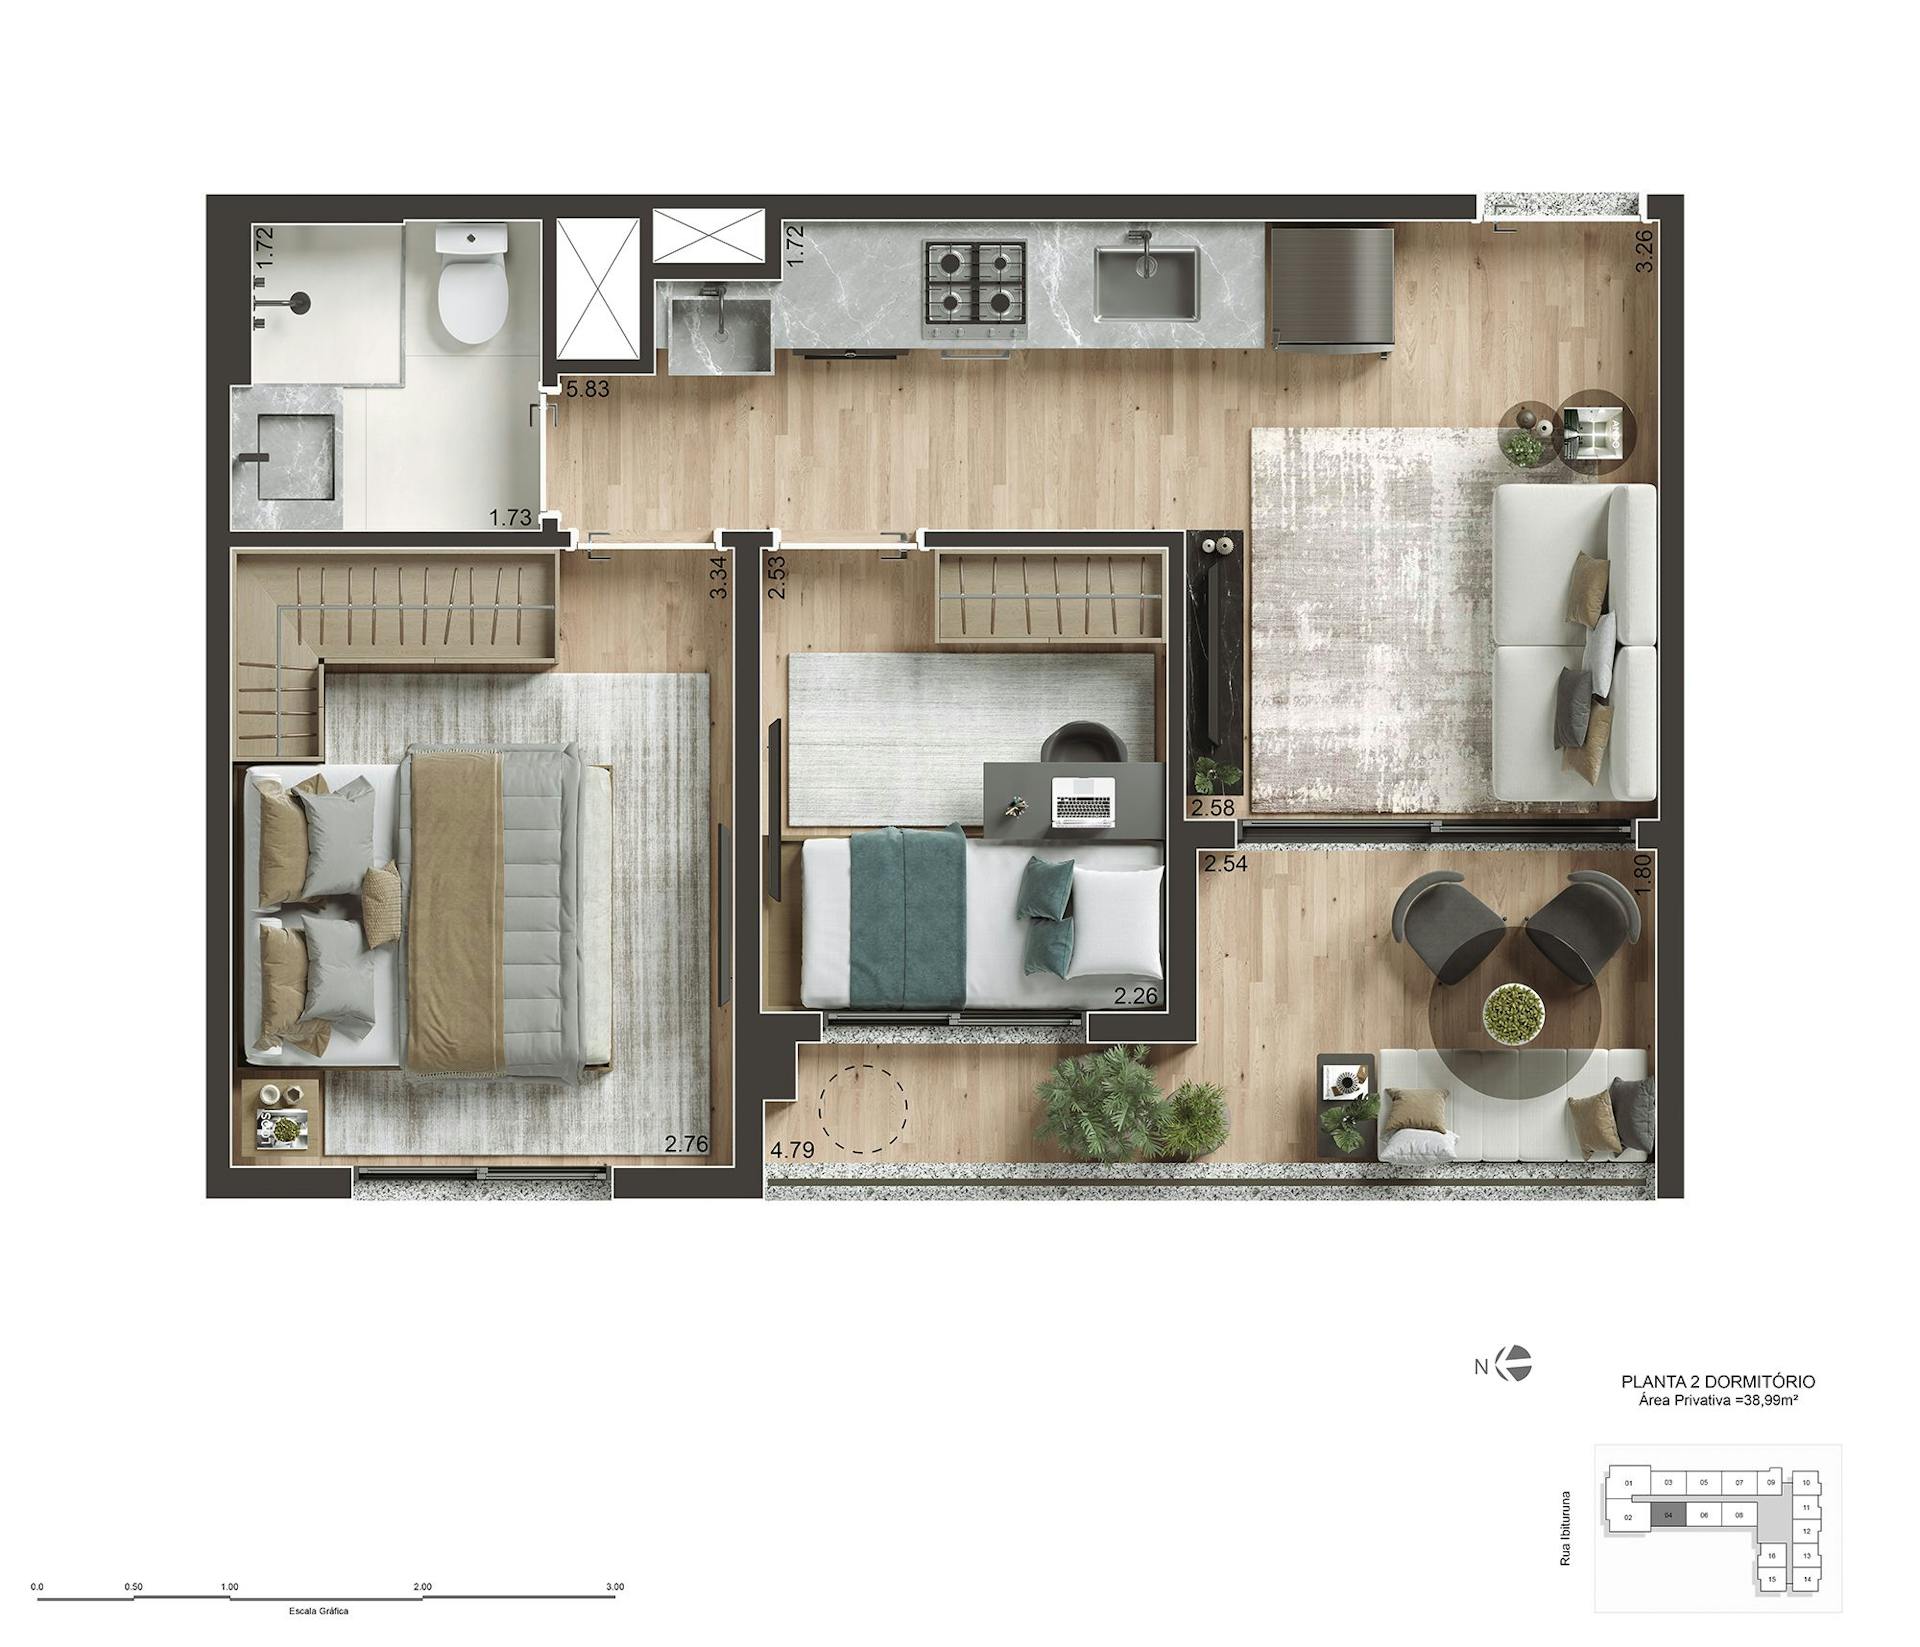 Perspectiva artística do apartamento de 39m² com 2 dorms - Final 04